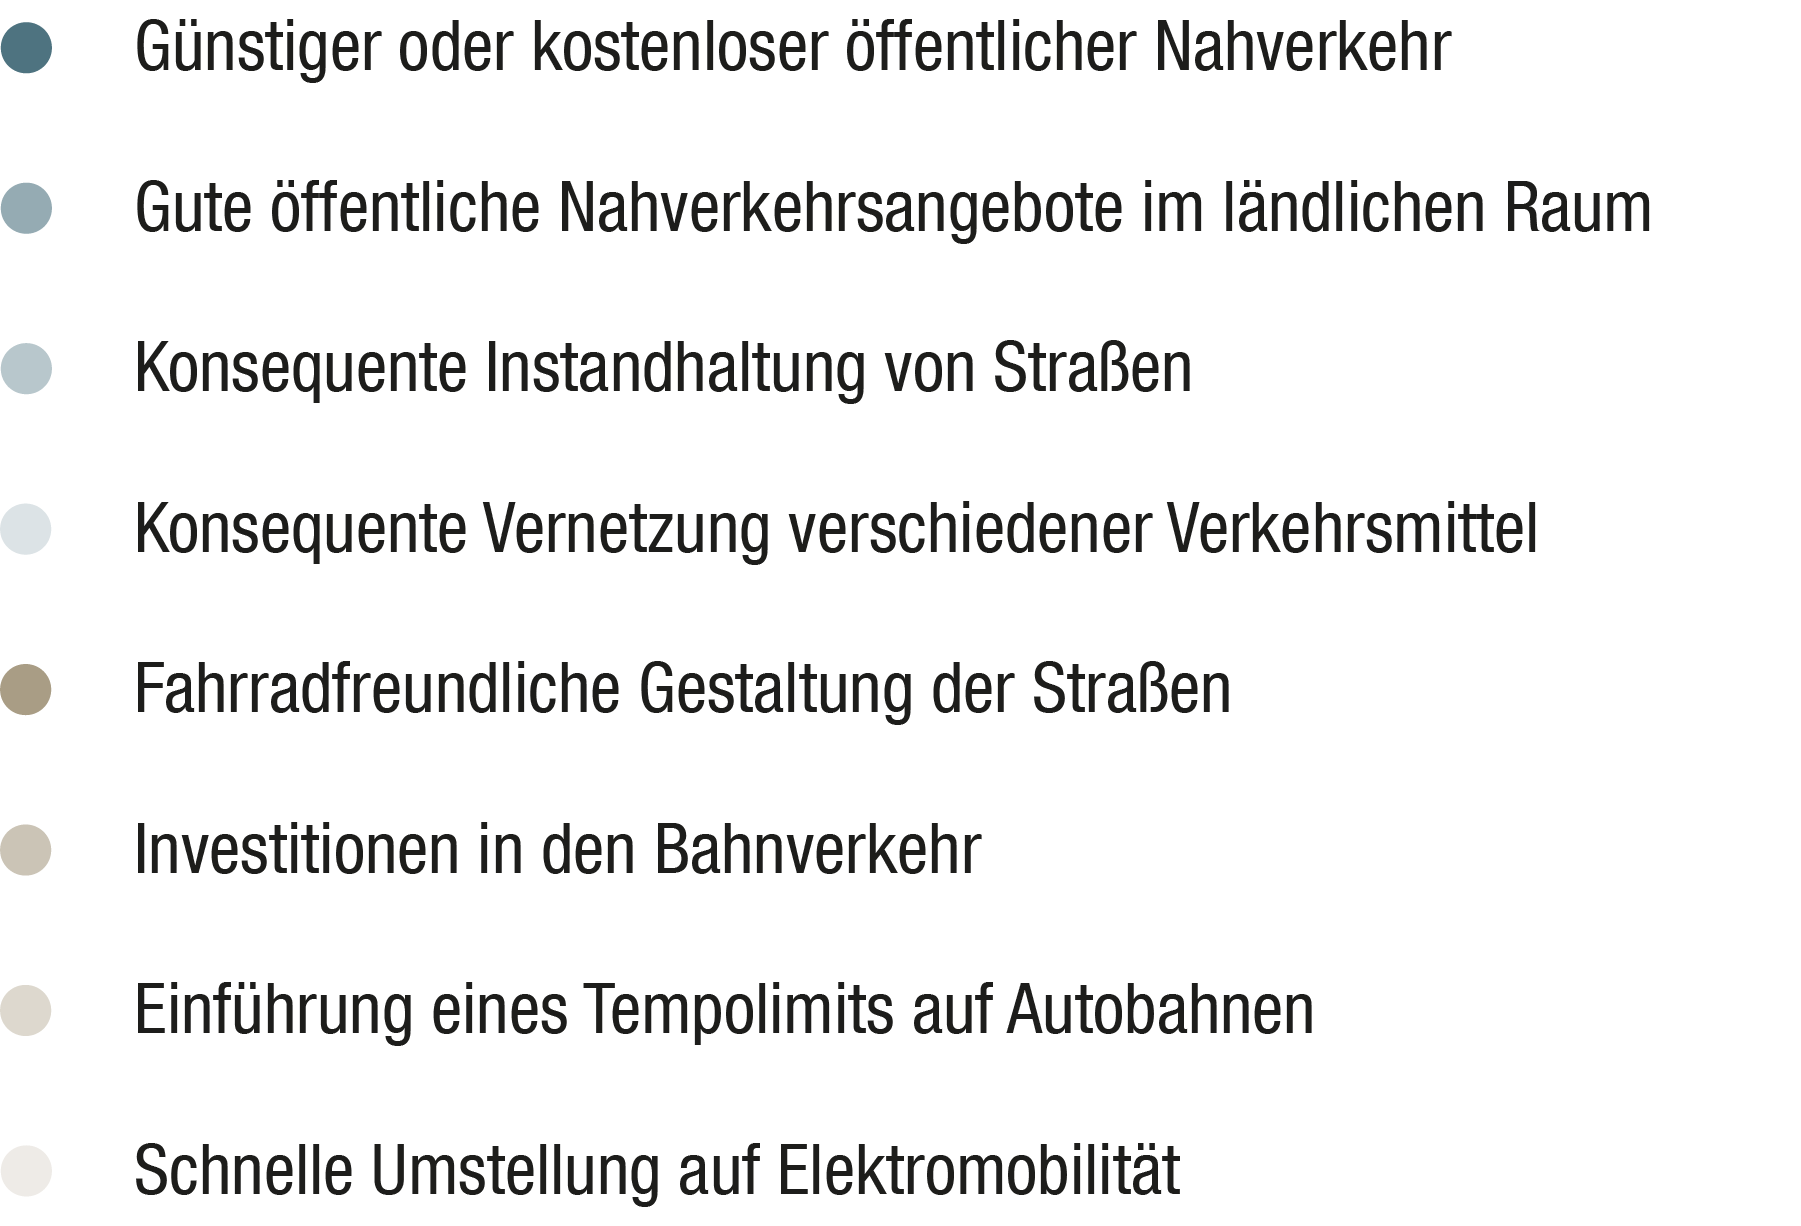 Legende: Diese Aspekte sind den Bürgern in Deutschland für einen fairen Straßenverkehr besonders wichtig